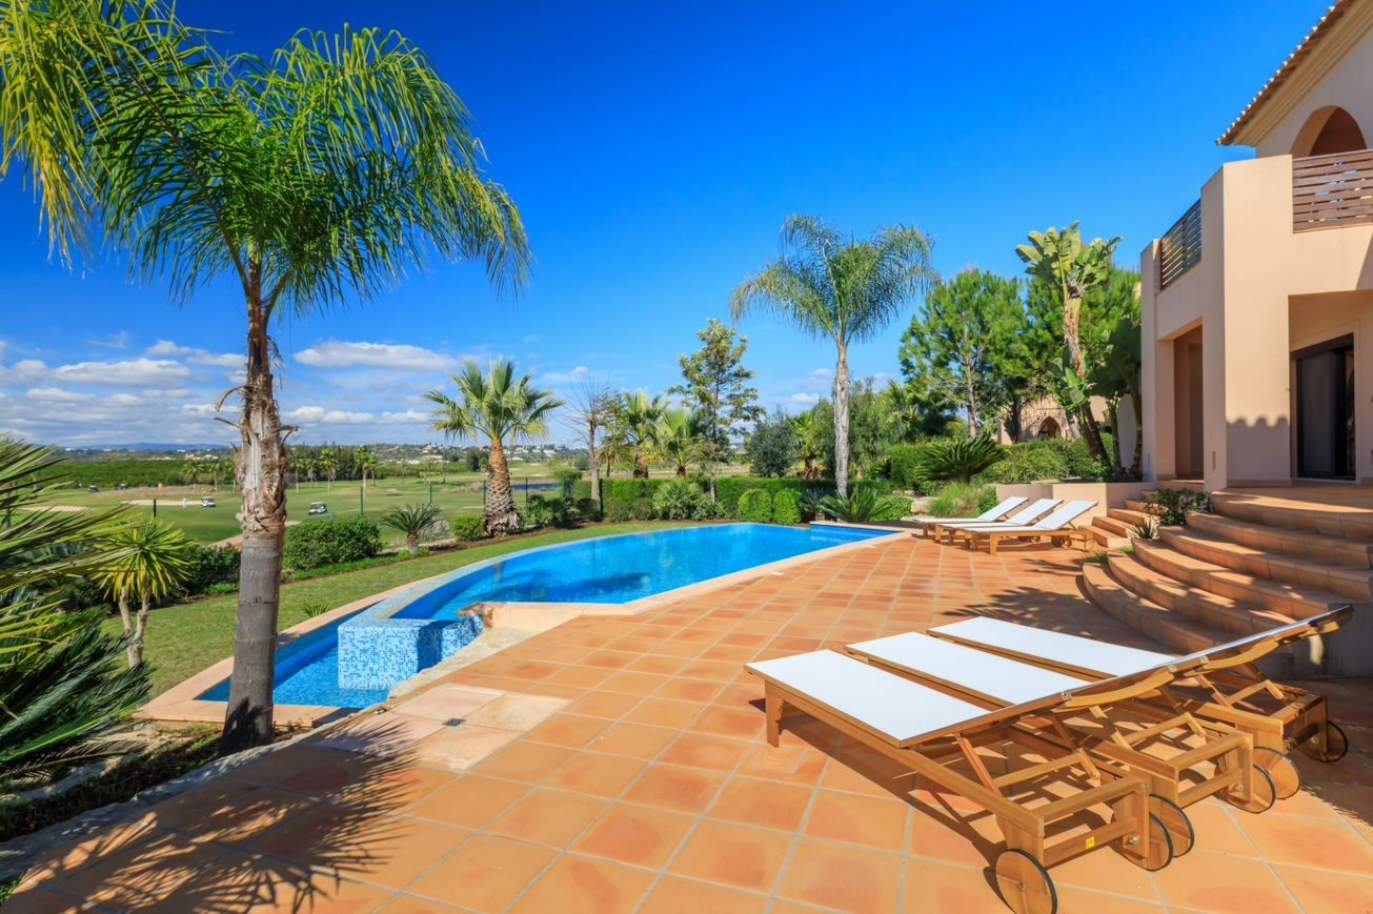 Venda de moradia, com 5 quartos, terraço e jardim, Silves, Algarve_155376